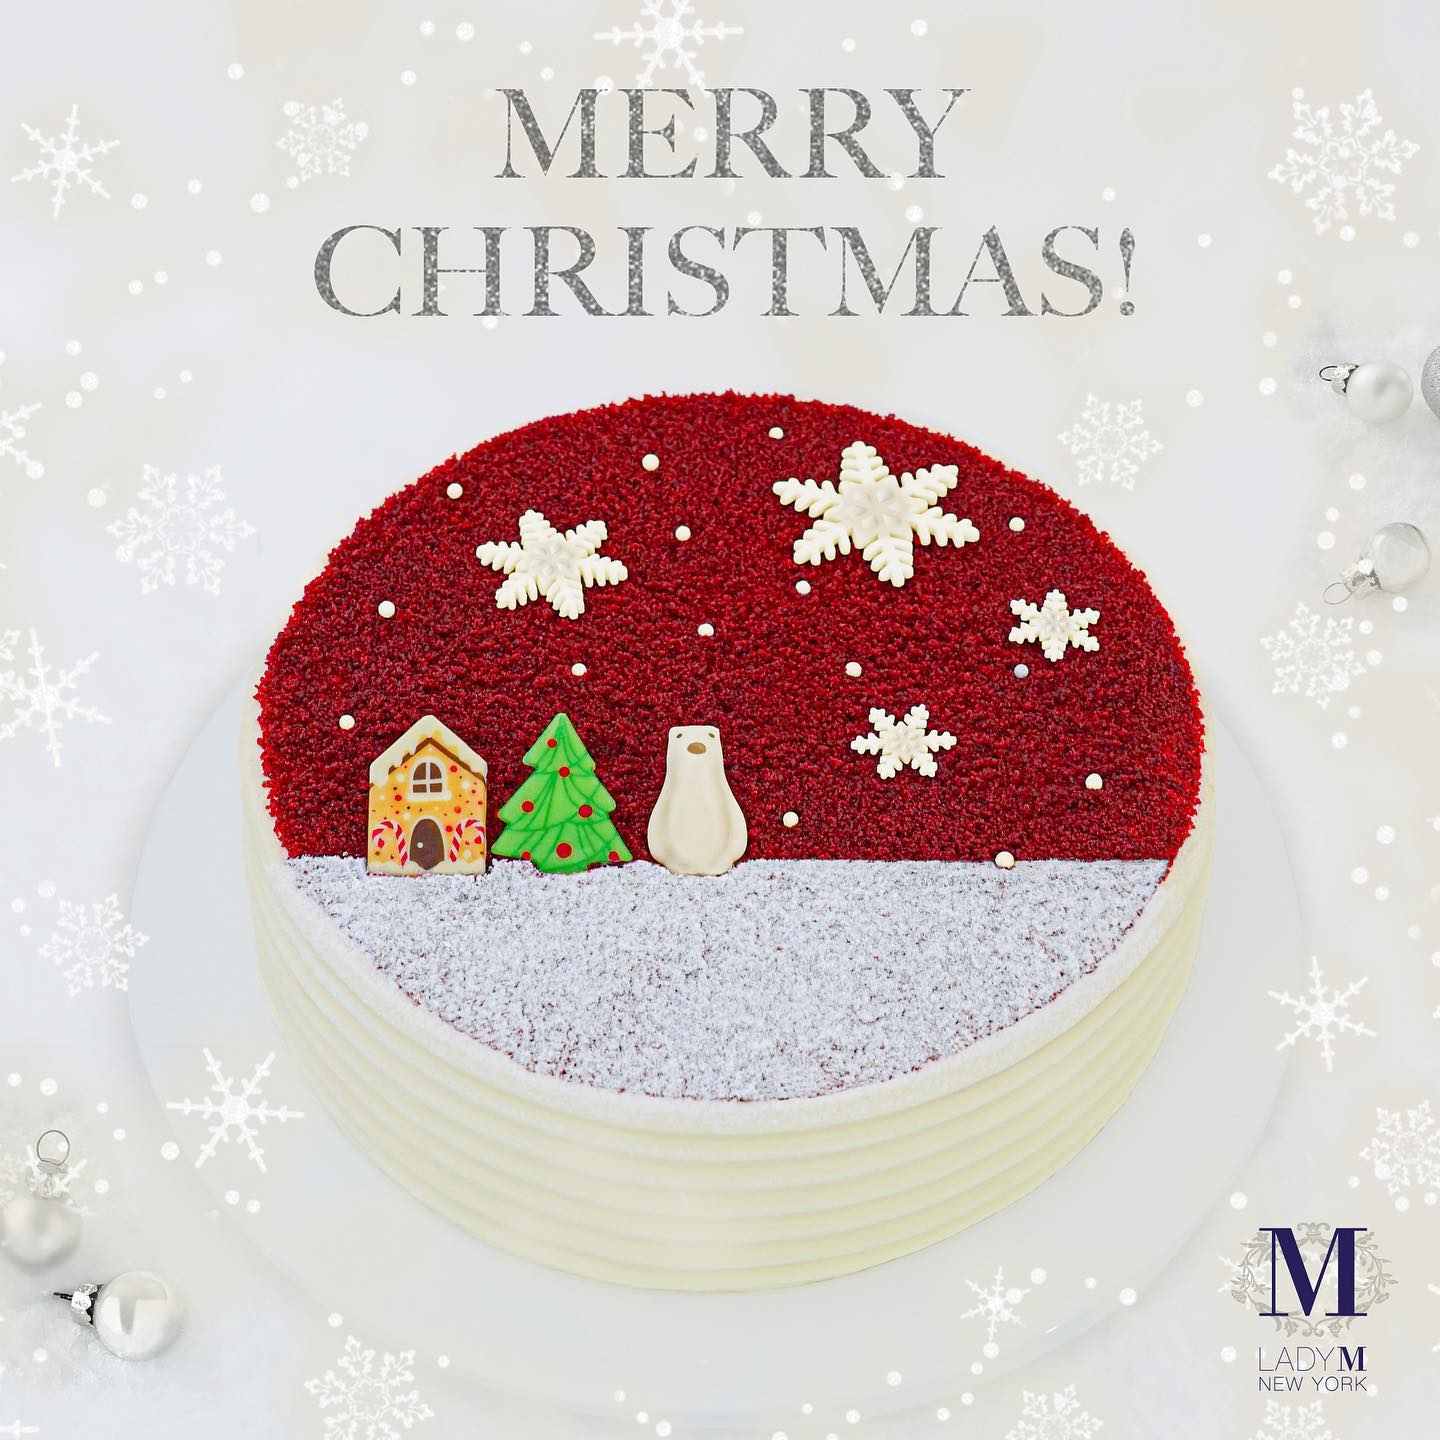 在普天同慶的聖誕節，把 Lady M 的蛋糕帶回家與家人摯愛一同分享，感受滿滿的節日氣氛和甜蜜時刻。祝各位蛋糕迷聖誕快樂！